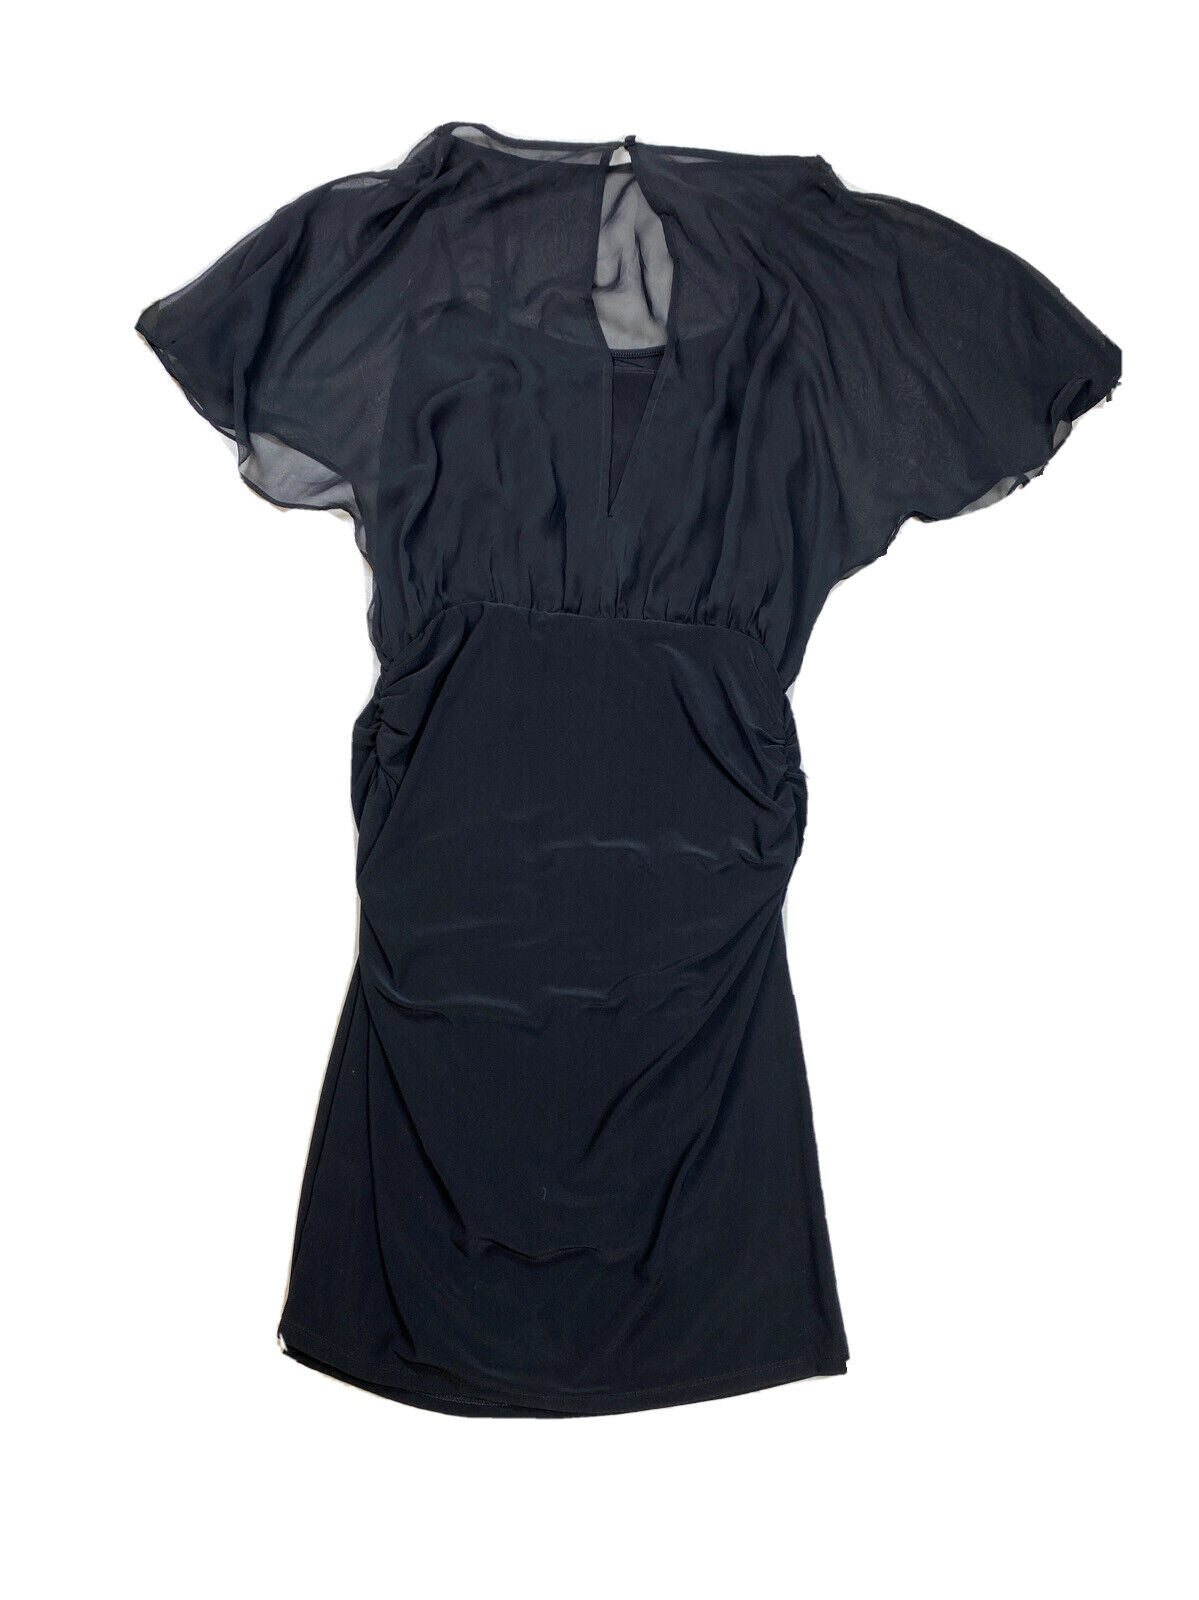 NEW White House Black Market Women's Black Flutter Sleeve Sheath Dress -S